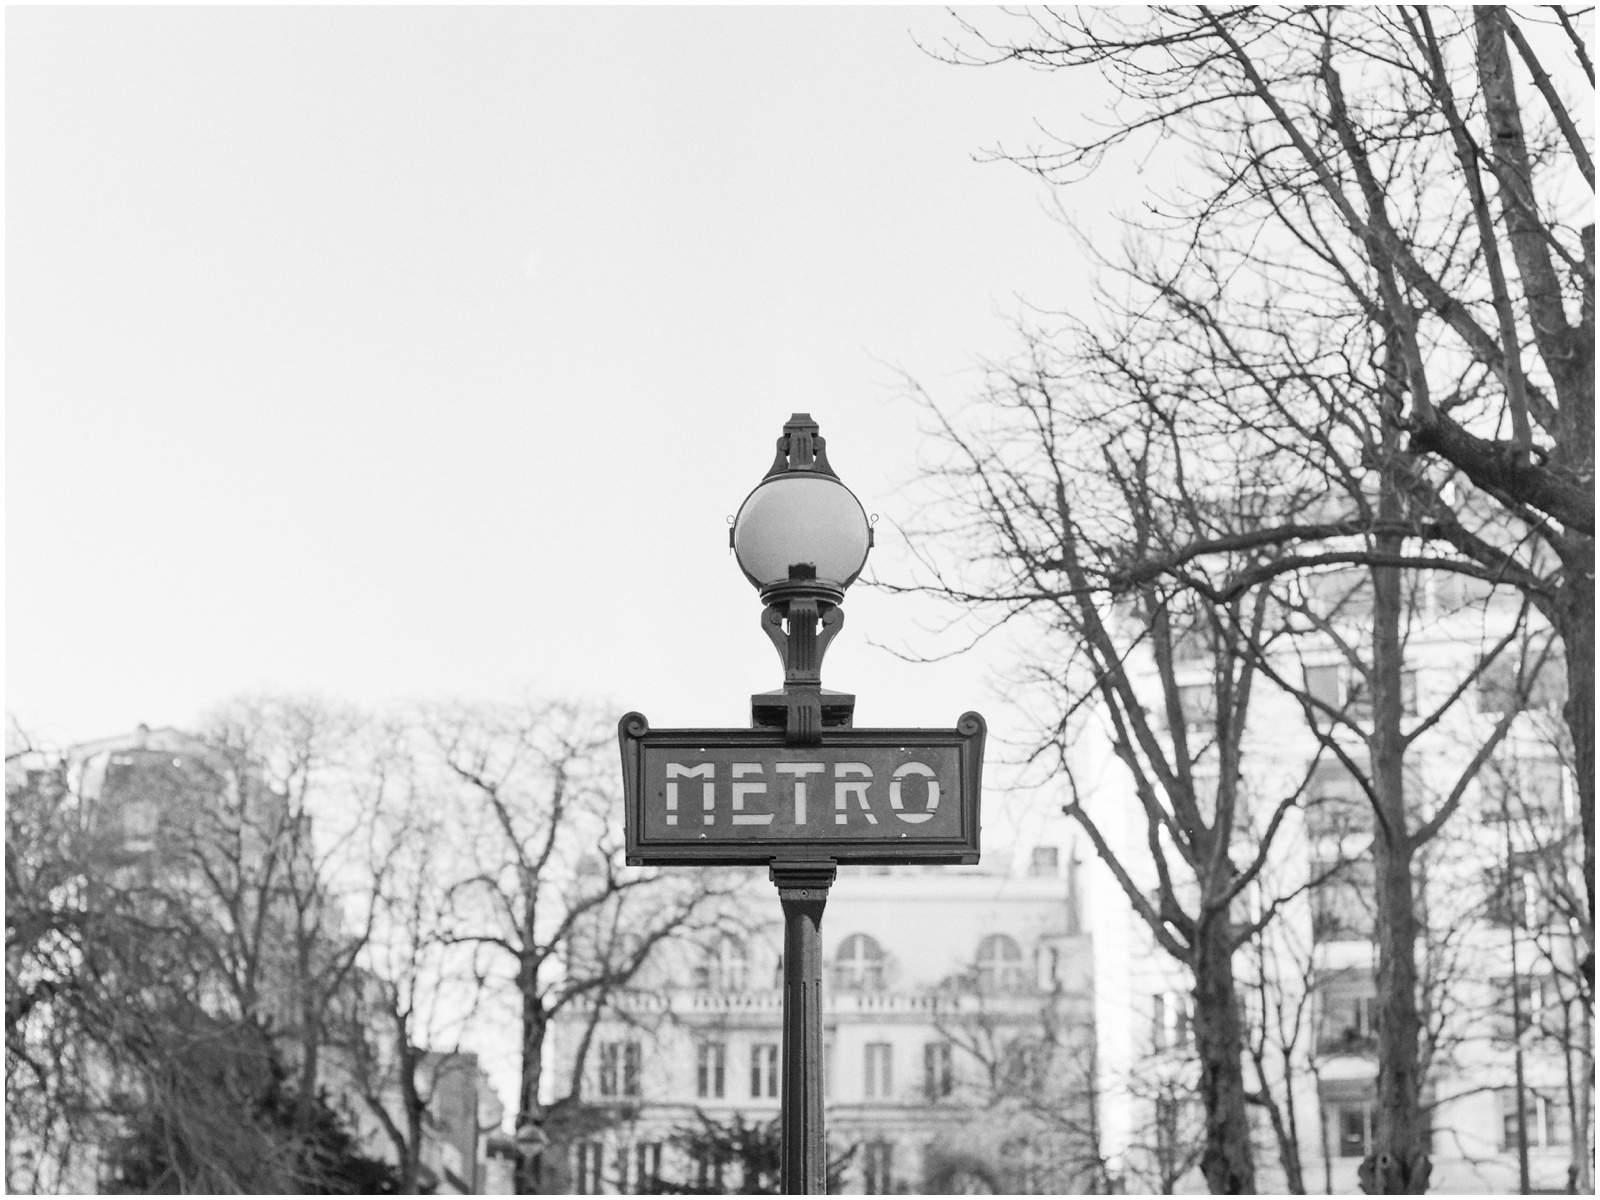 paris metro sign